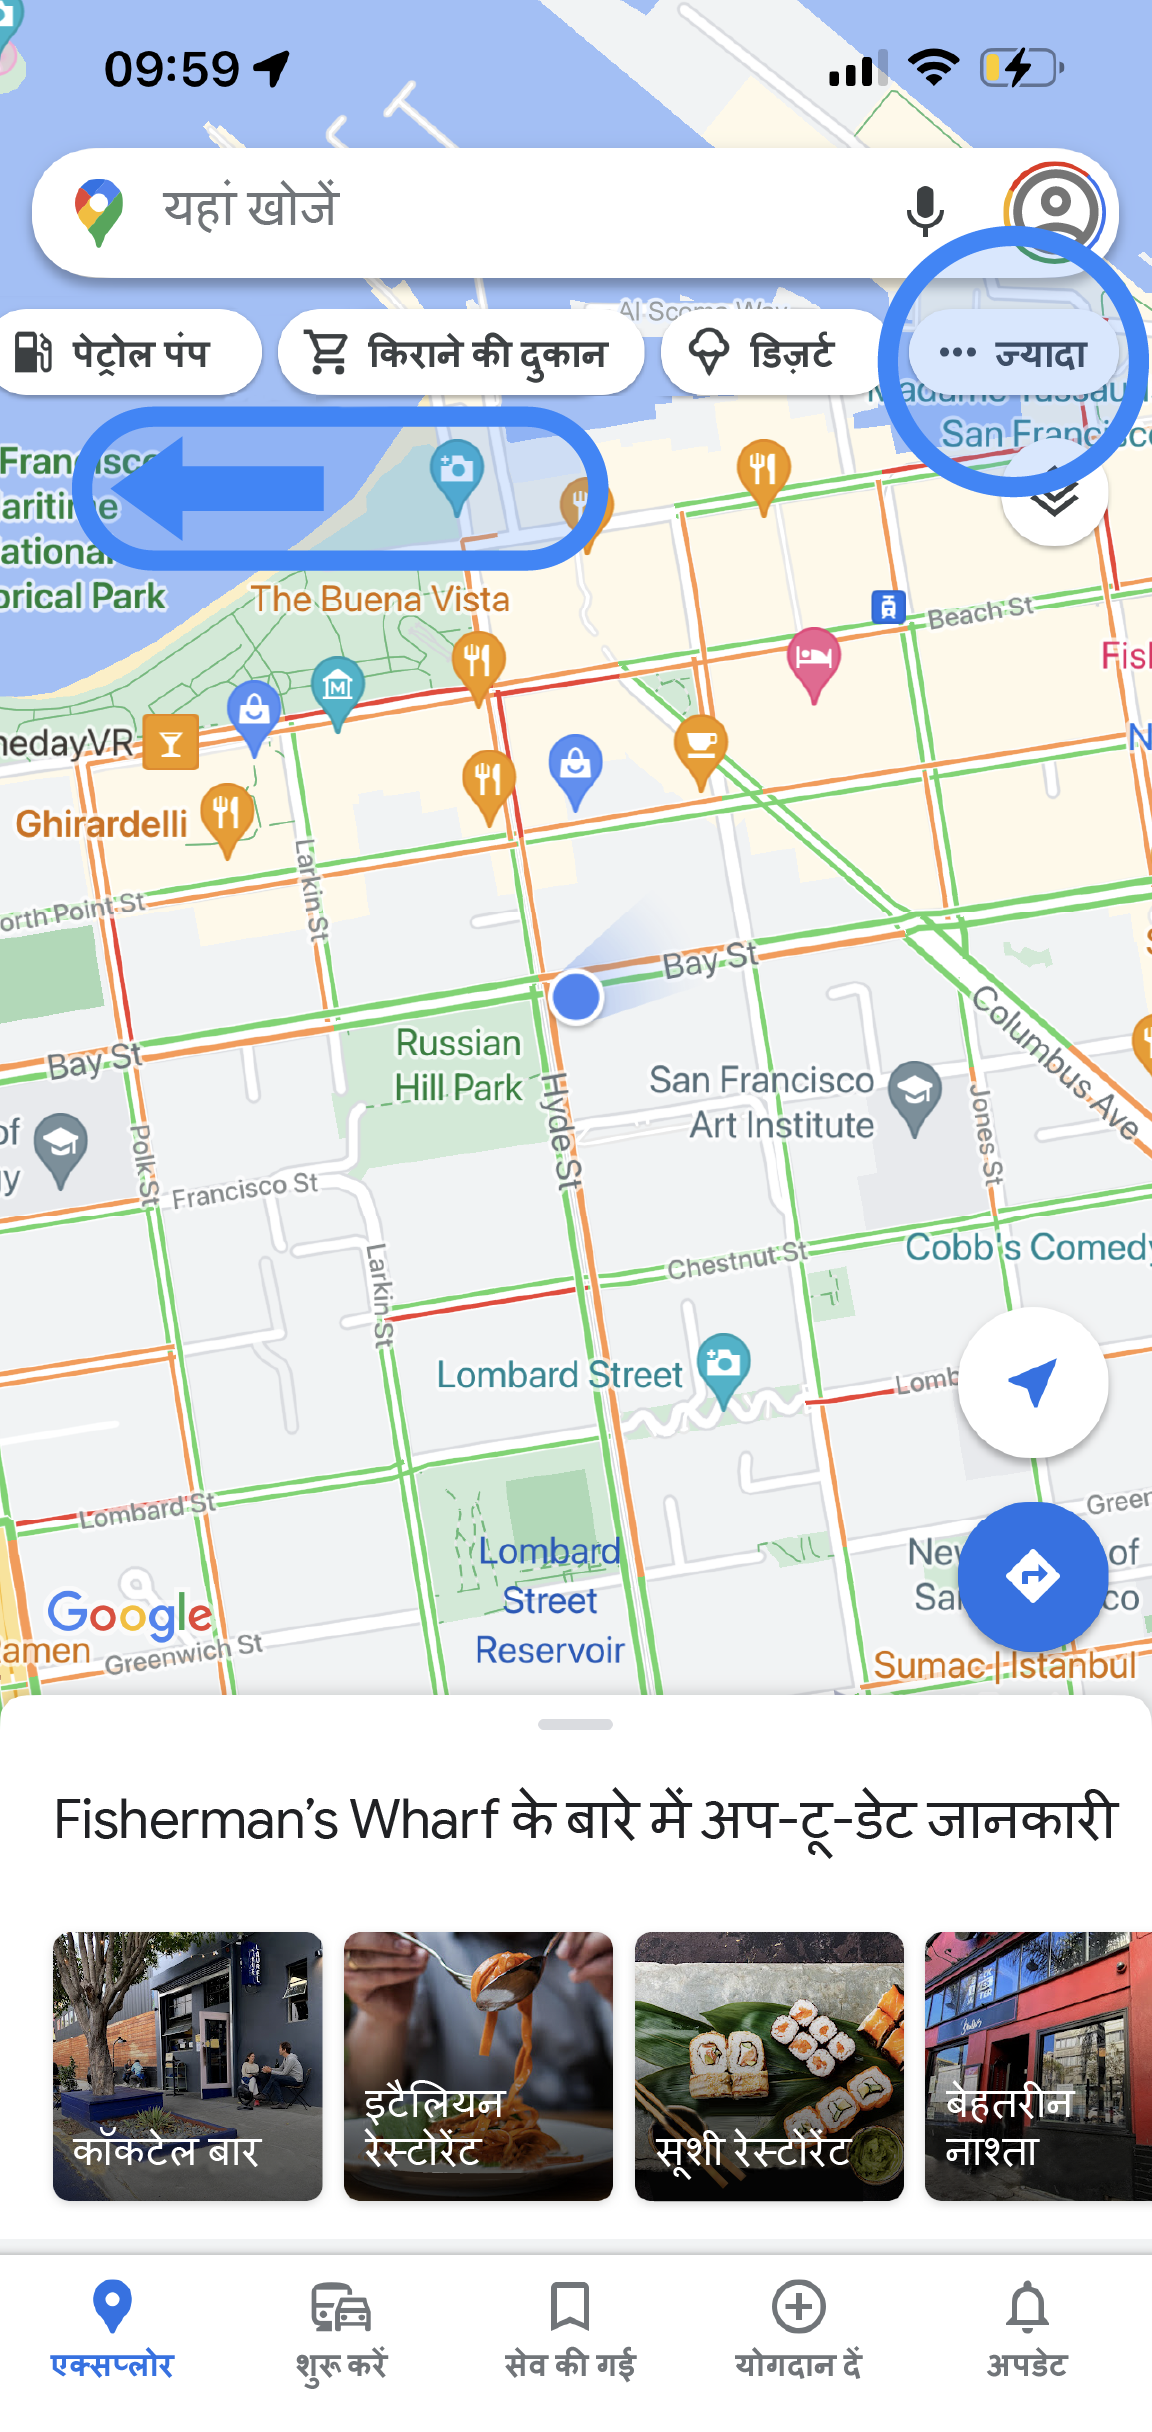 Google Maps ऐप्लिकेशन किसी इलाके का मैप दिखाता है. खोज बार के नीचे टैब होते हैं. सभी टैब देखने के लिए, इन्हें दाईं ओर स्क्रोल किया जा सकता है. दाईं ओर आखिर में, नीले रंग का "अन्य कैटगरी" टैब होता है. 